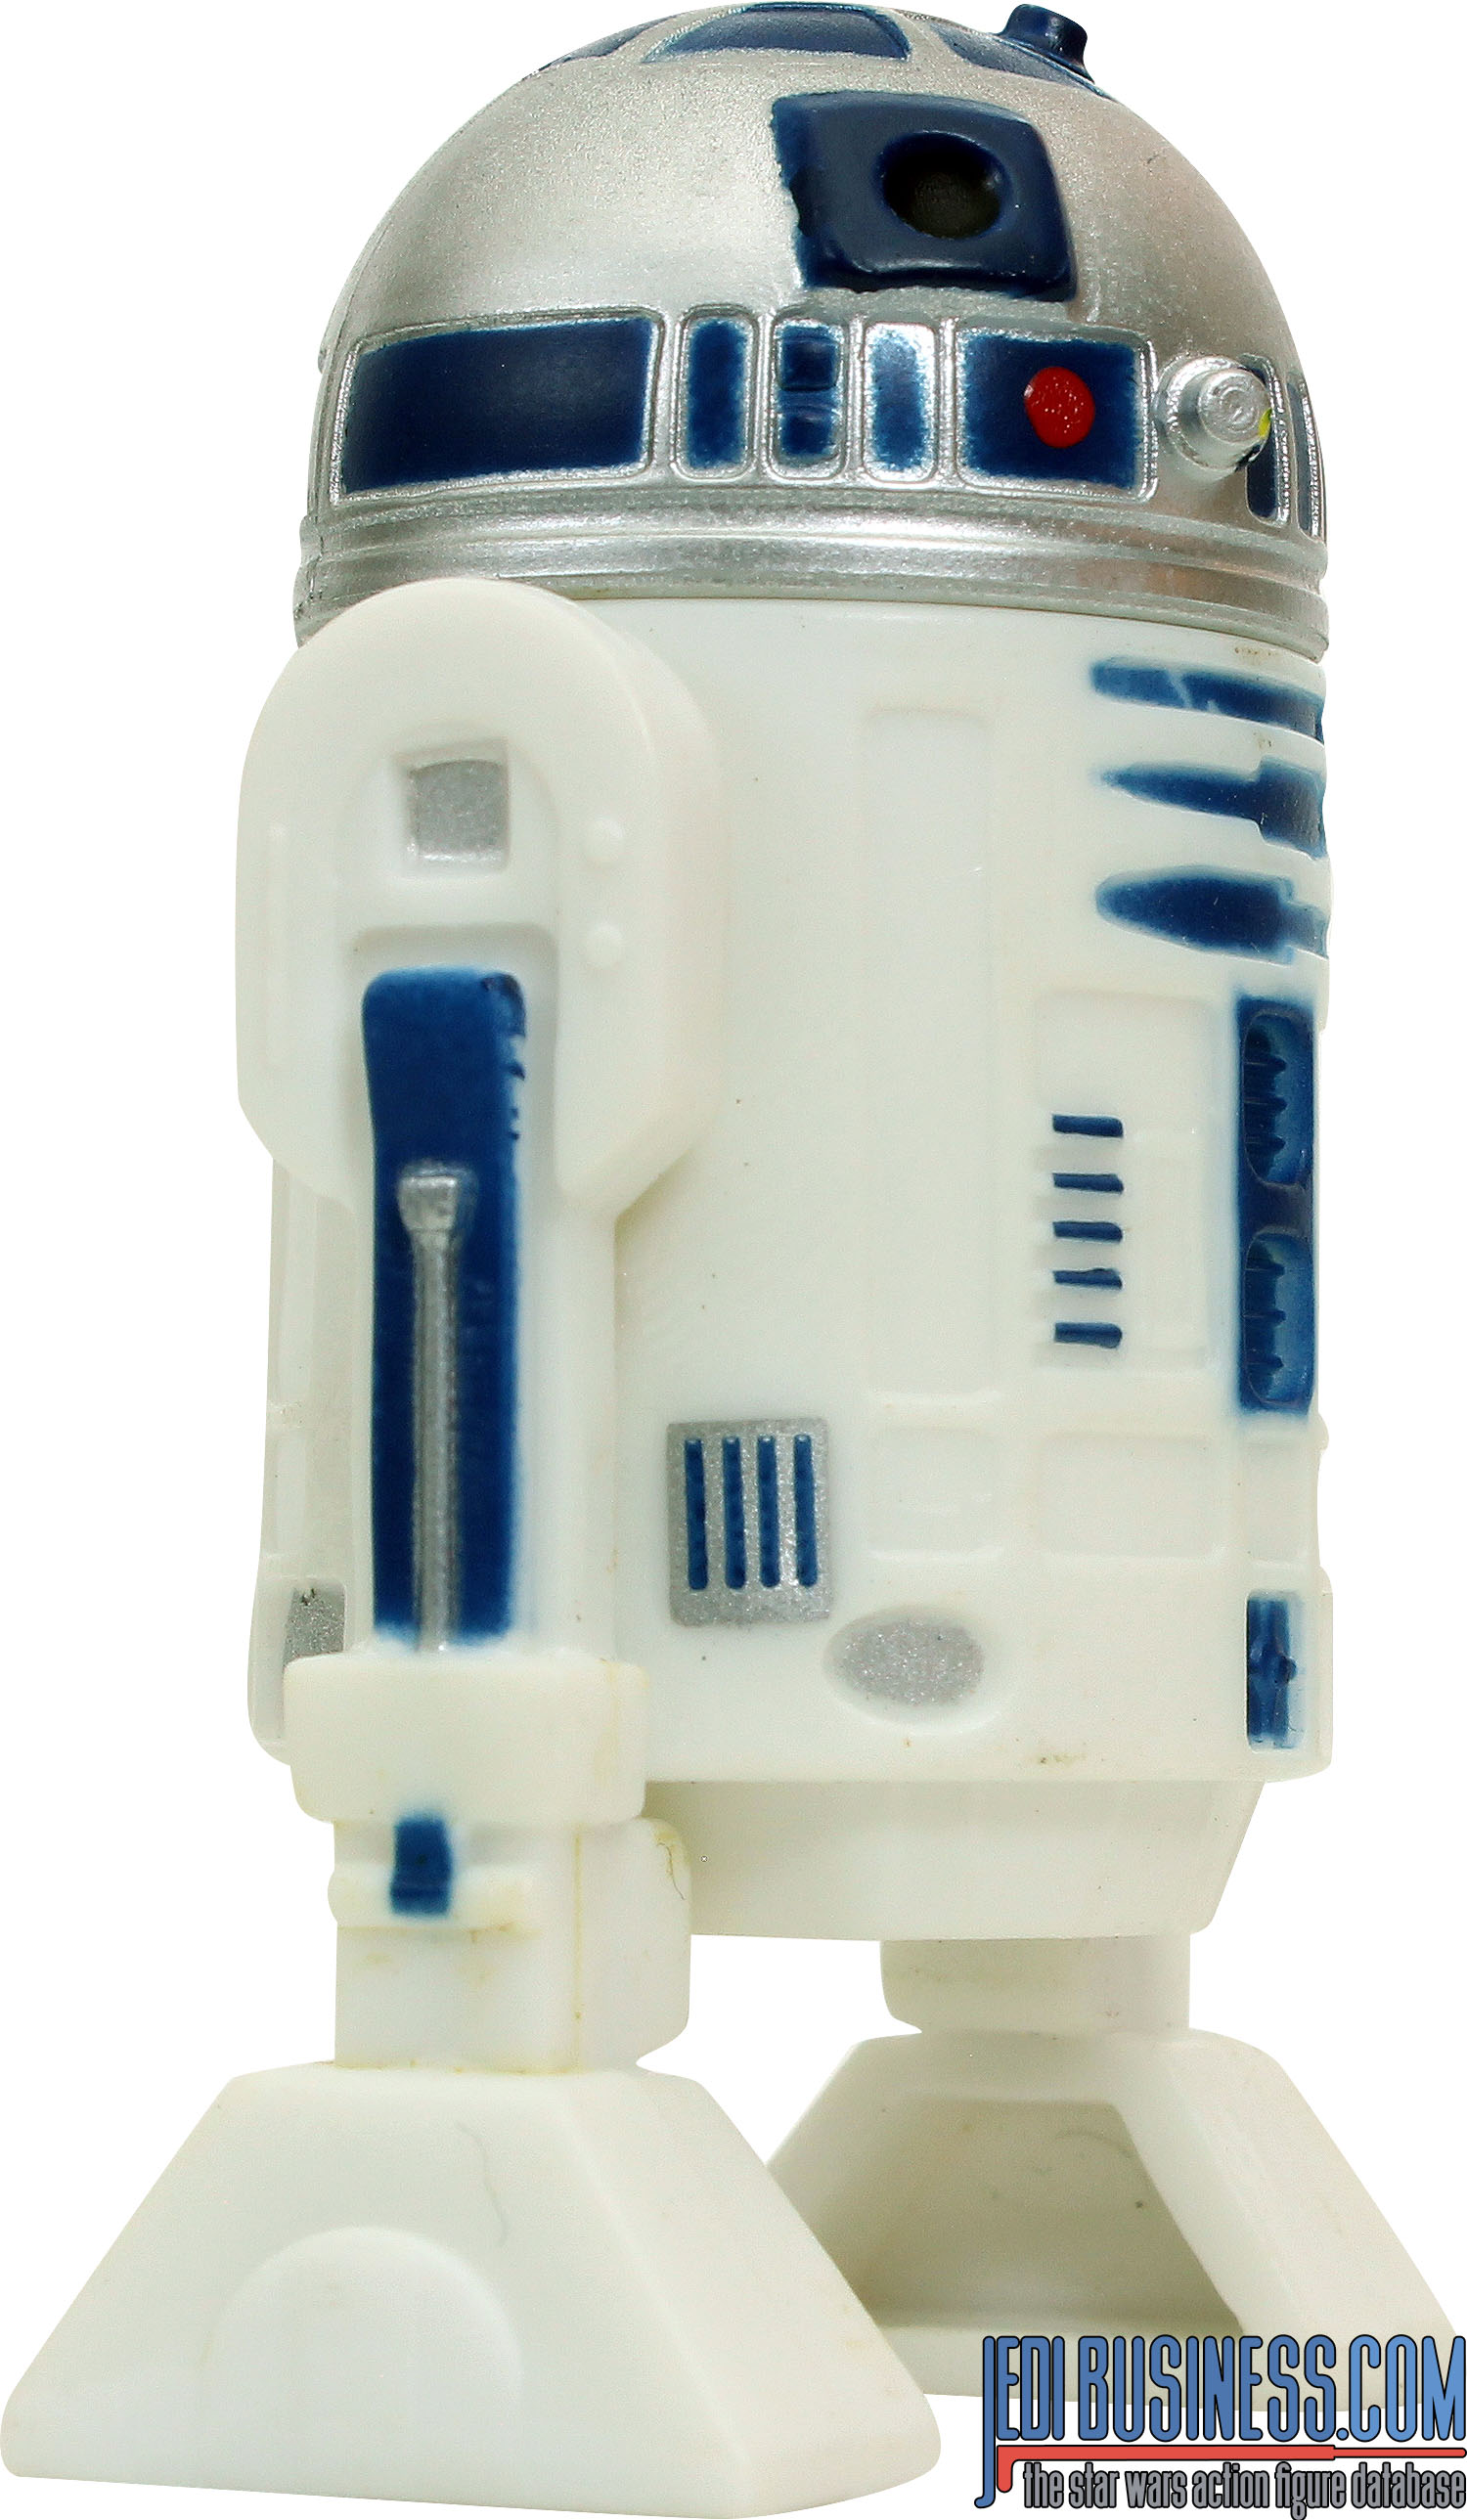 R2-D2 With STARSPEEDER 1000